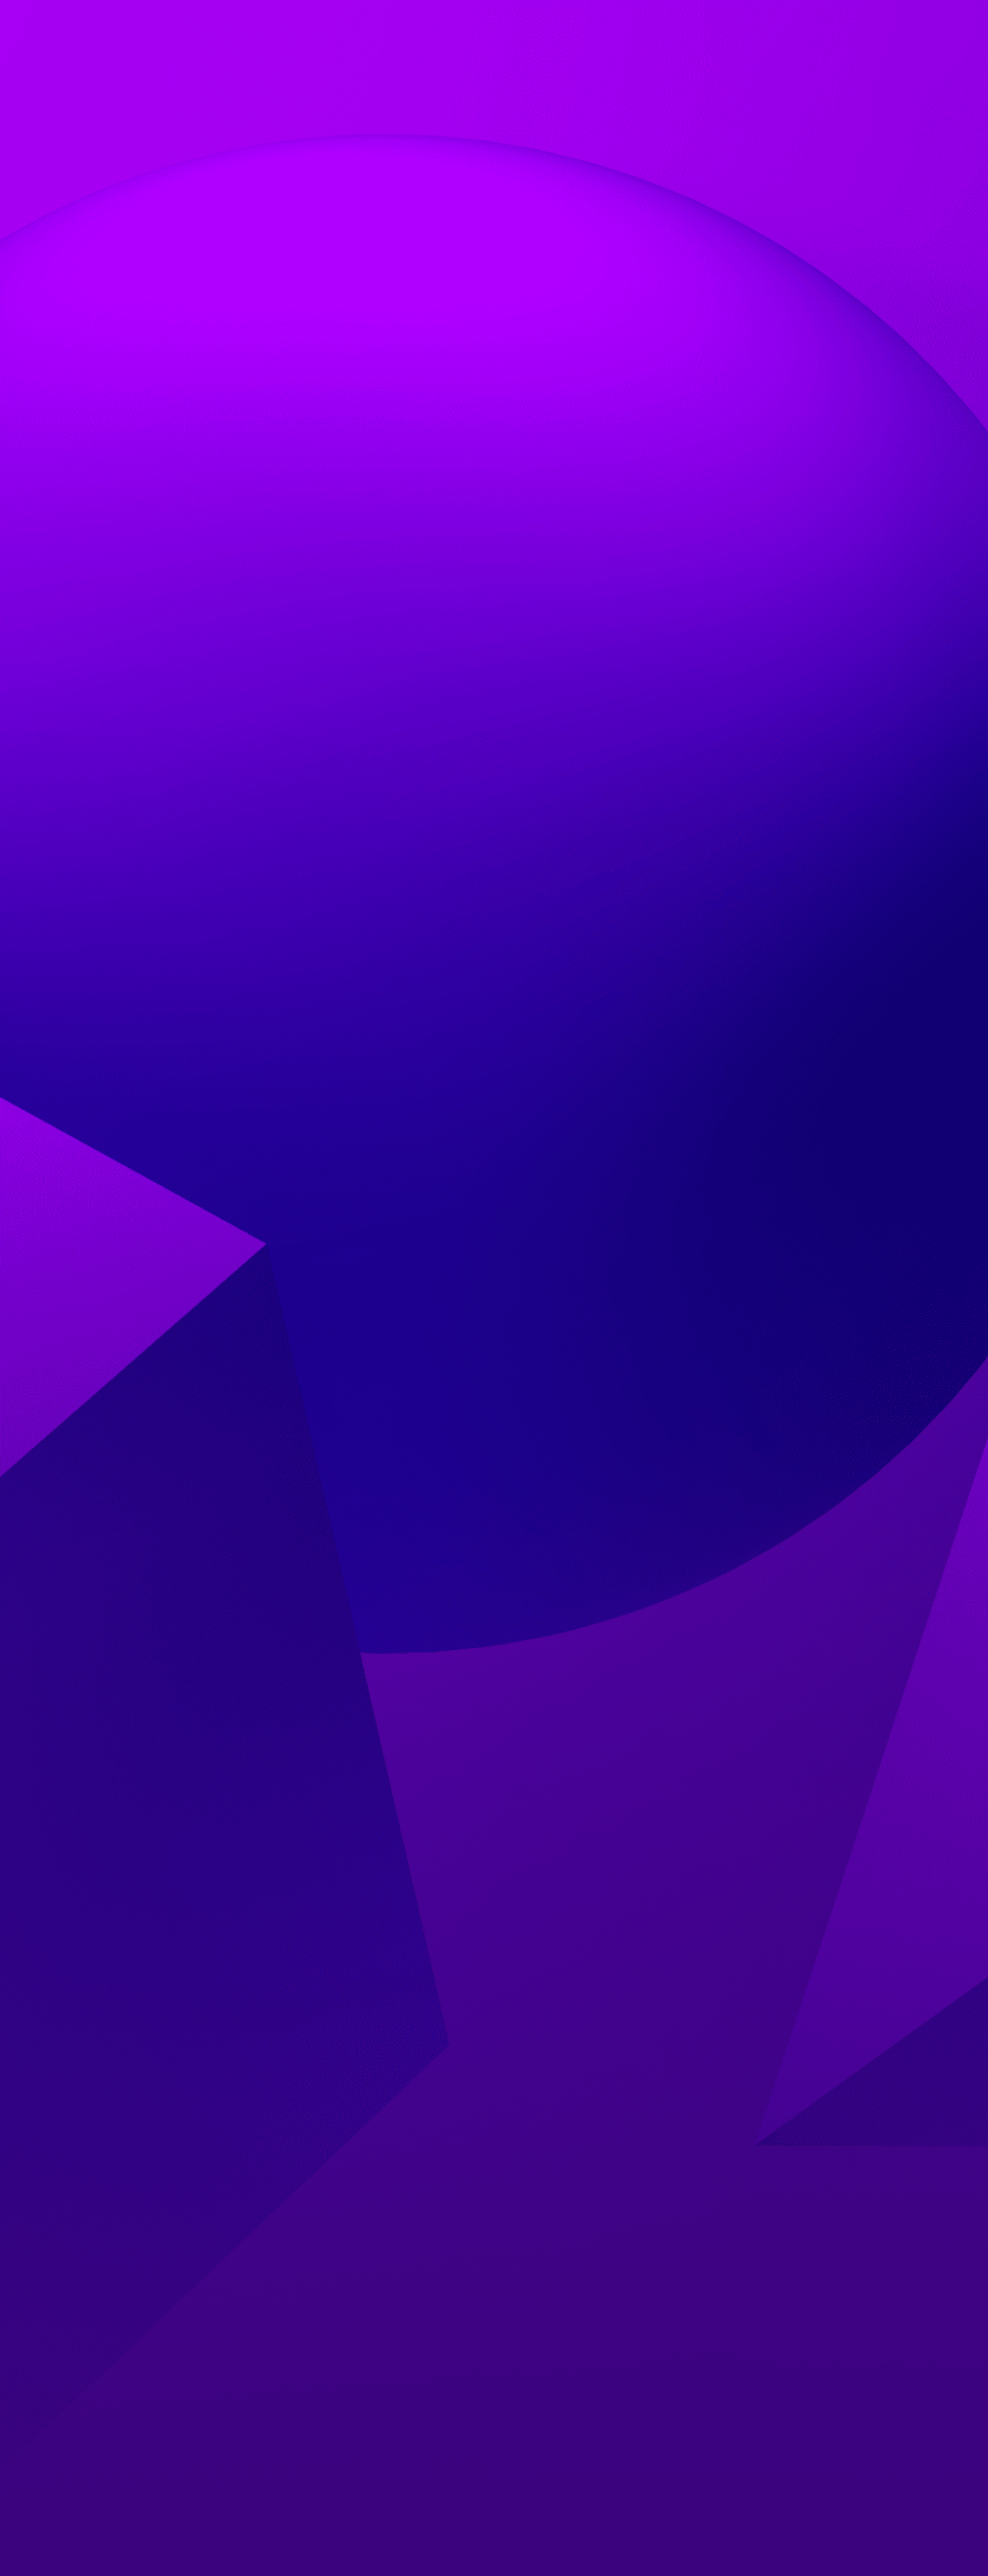 En strukturert lilla bakgrunn med 3 former - en sfære, en kjegle og en kube